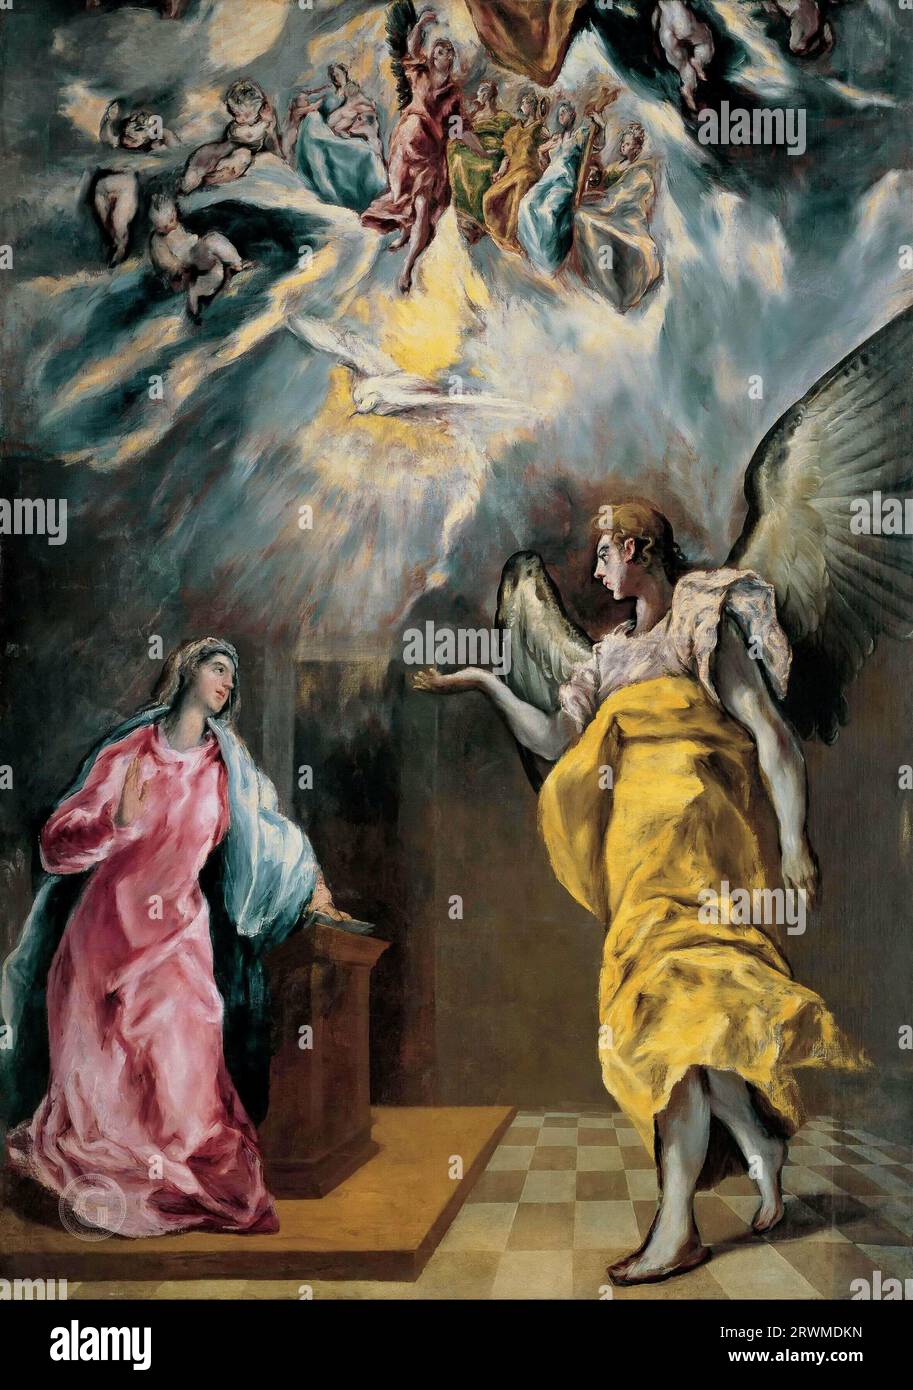 El Greco – The Annunciation 1614. 294x209 Fundacion Banco Santander, Madrid. Stock Photo